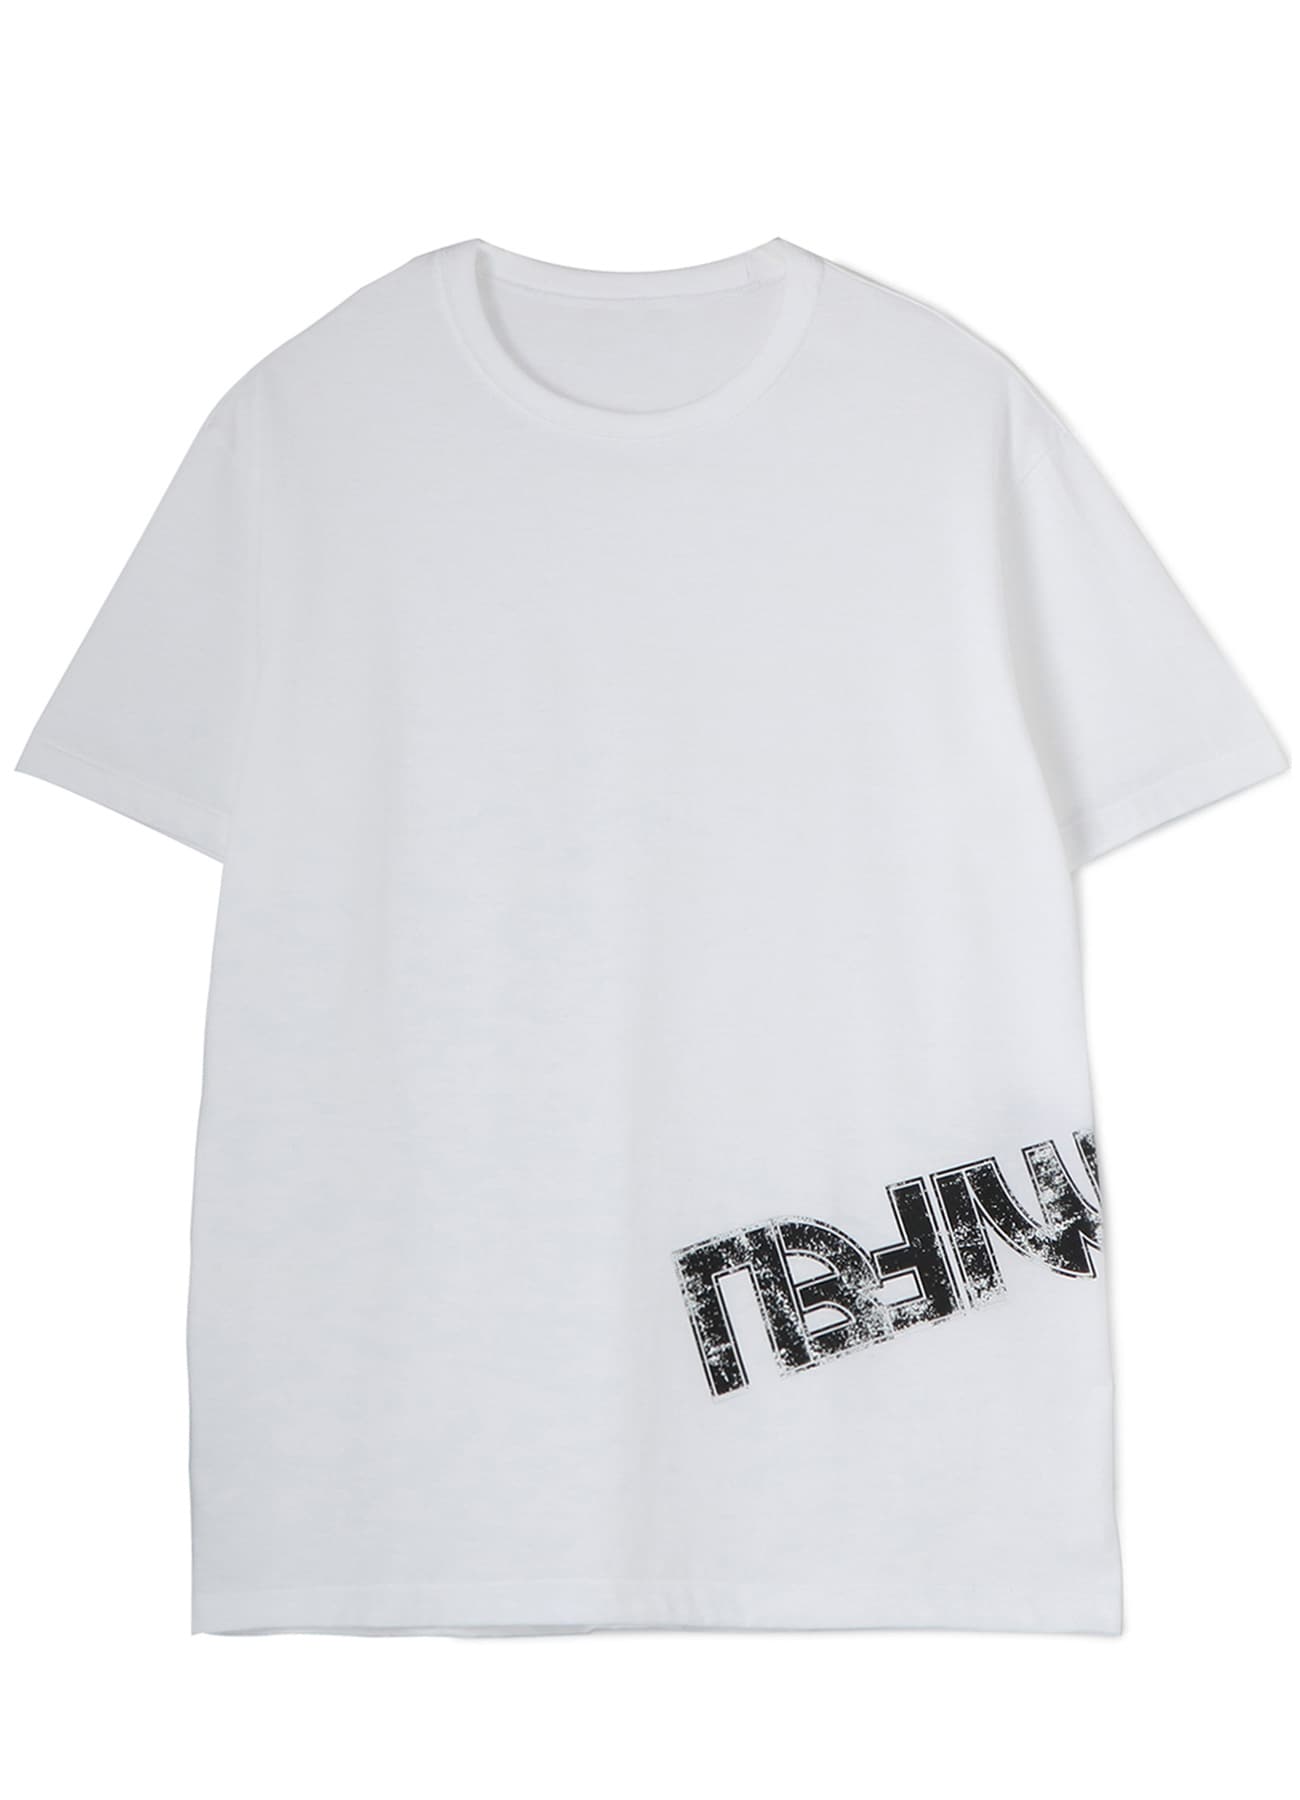 20/-Plain Stitch LIMI FEU Print T-Shirt A